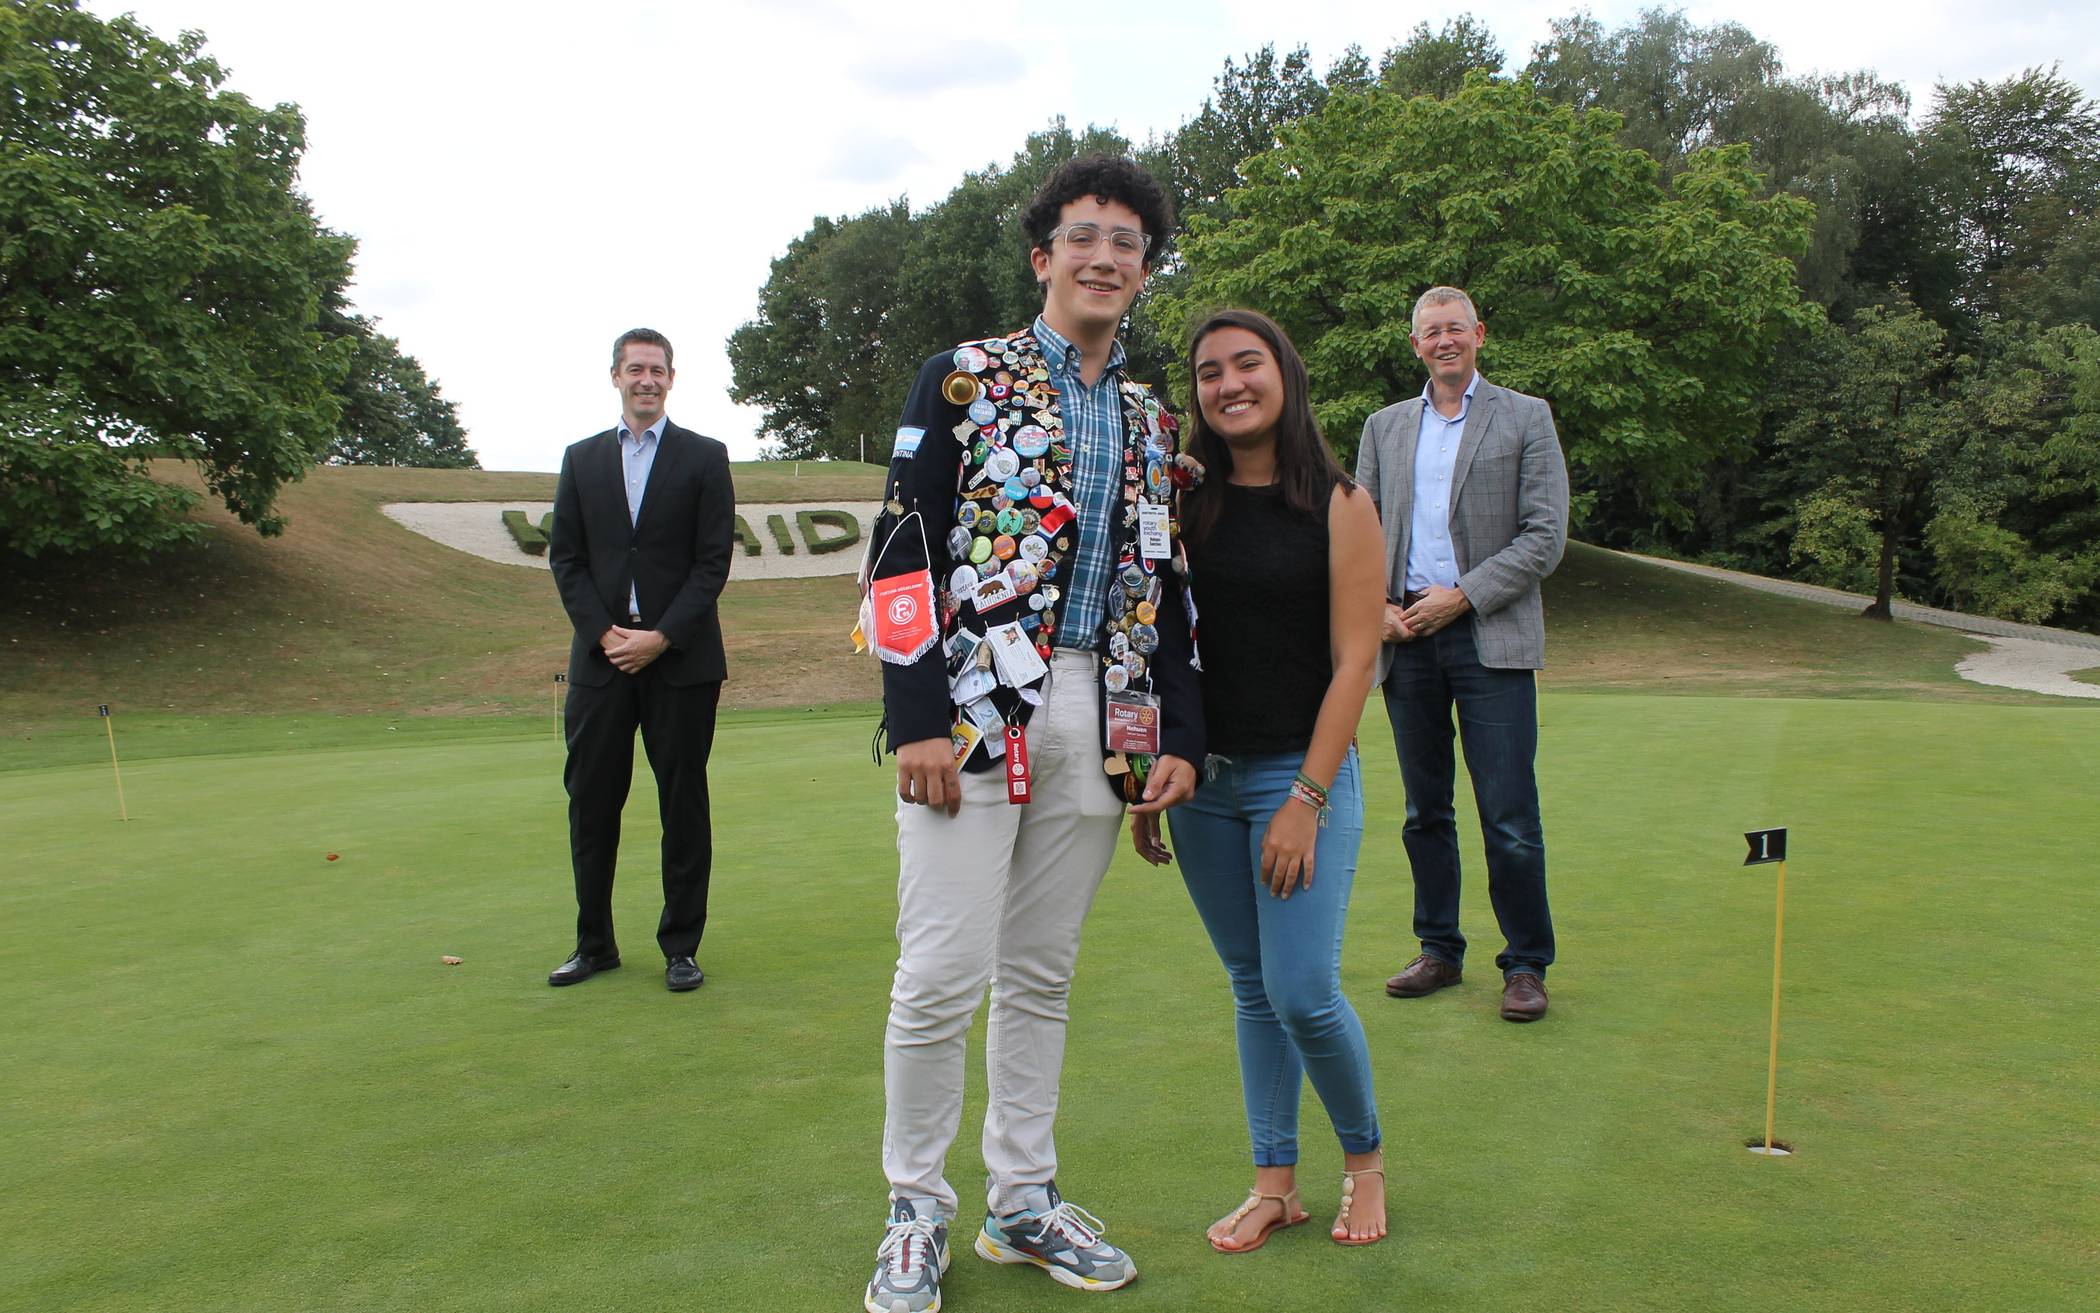  Nehuen Sanchez und Daniela Freitas waren auf Einladung der Mettmanner Rotarier rund um Dr. Michael Niklas (rechts) und Marcel Günther im Kosaido Golfclub zu Gast. Nehuen präsentierte dort sein Deutschland-Jackett mit einer Unzahl von Souvenirs und Pins. 